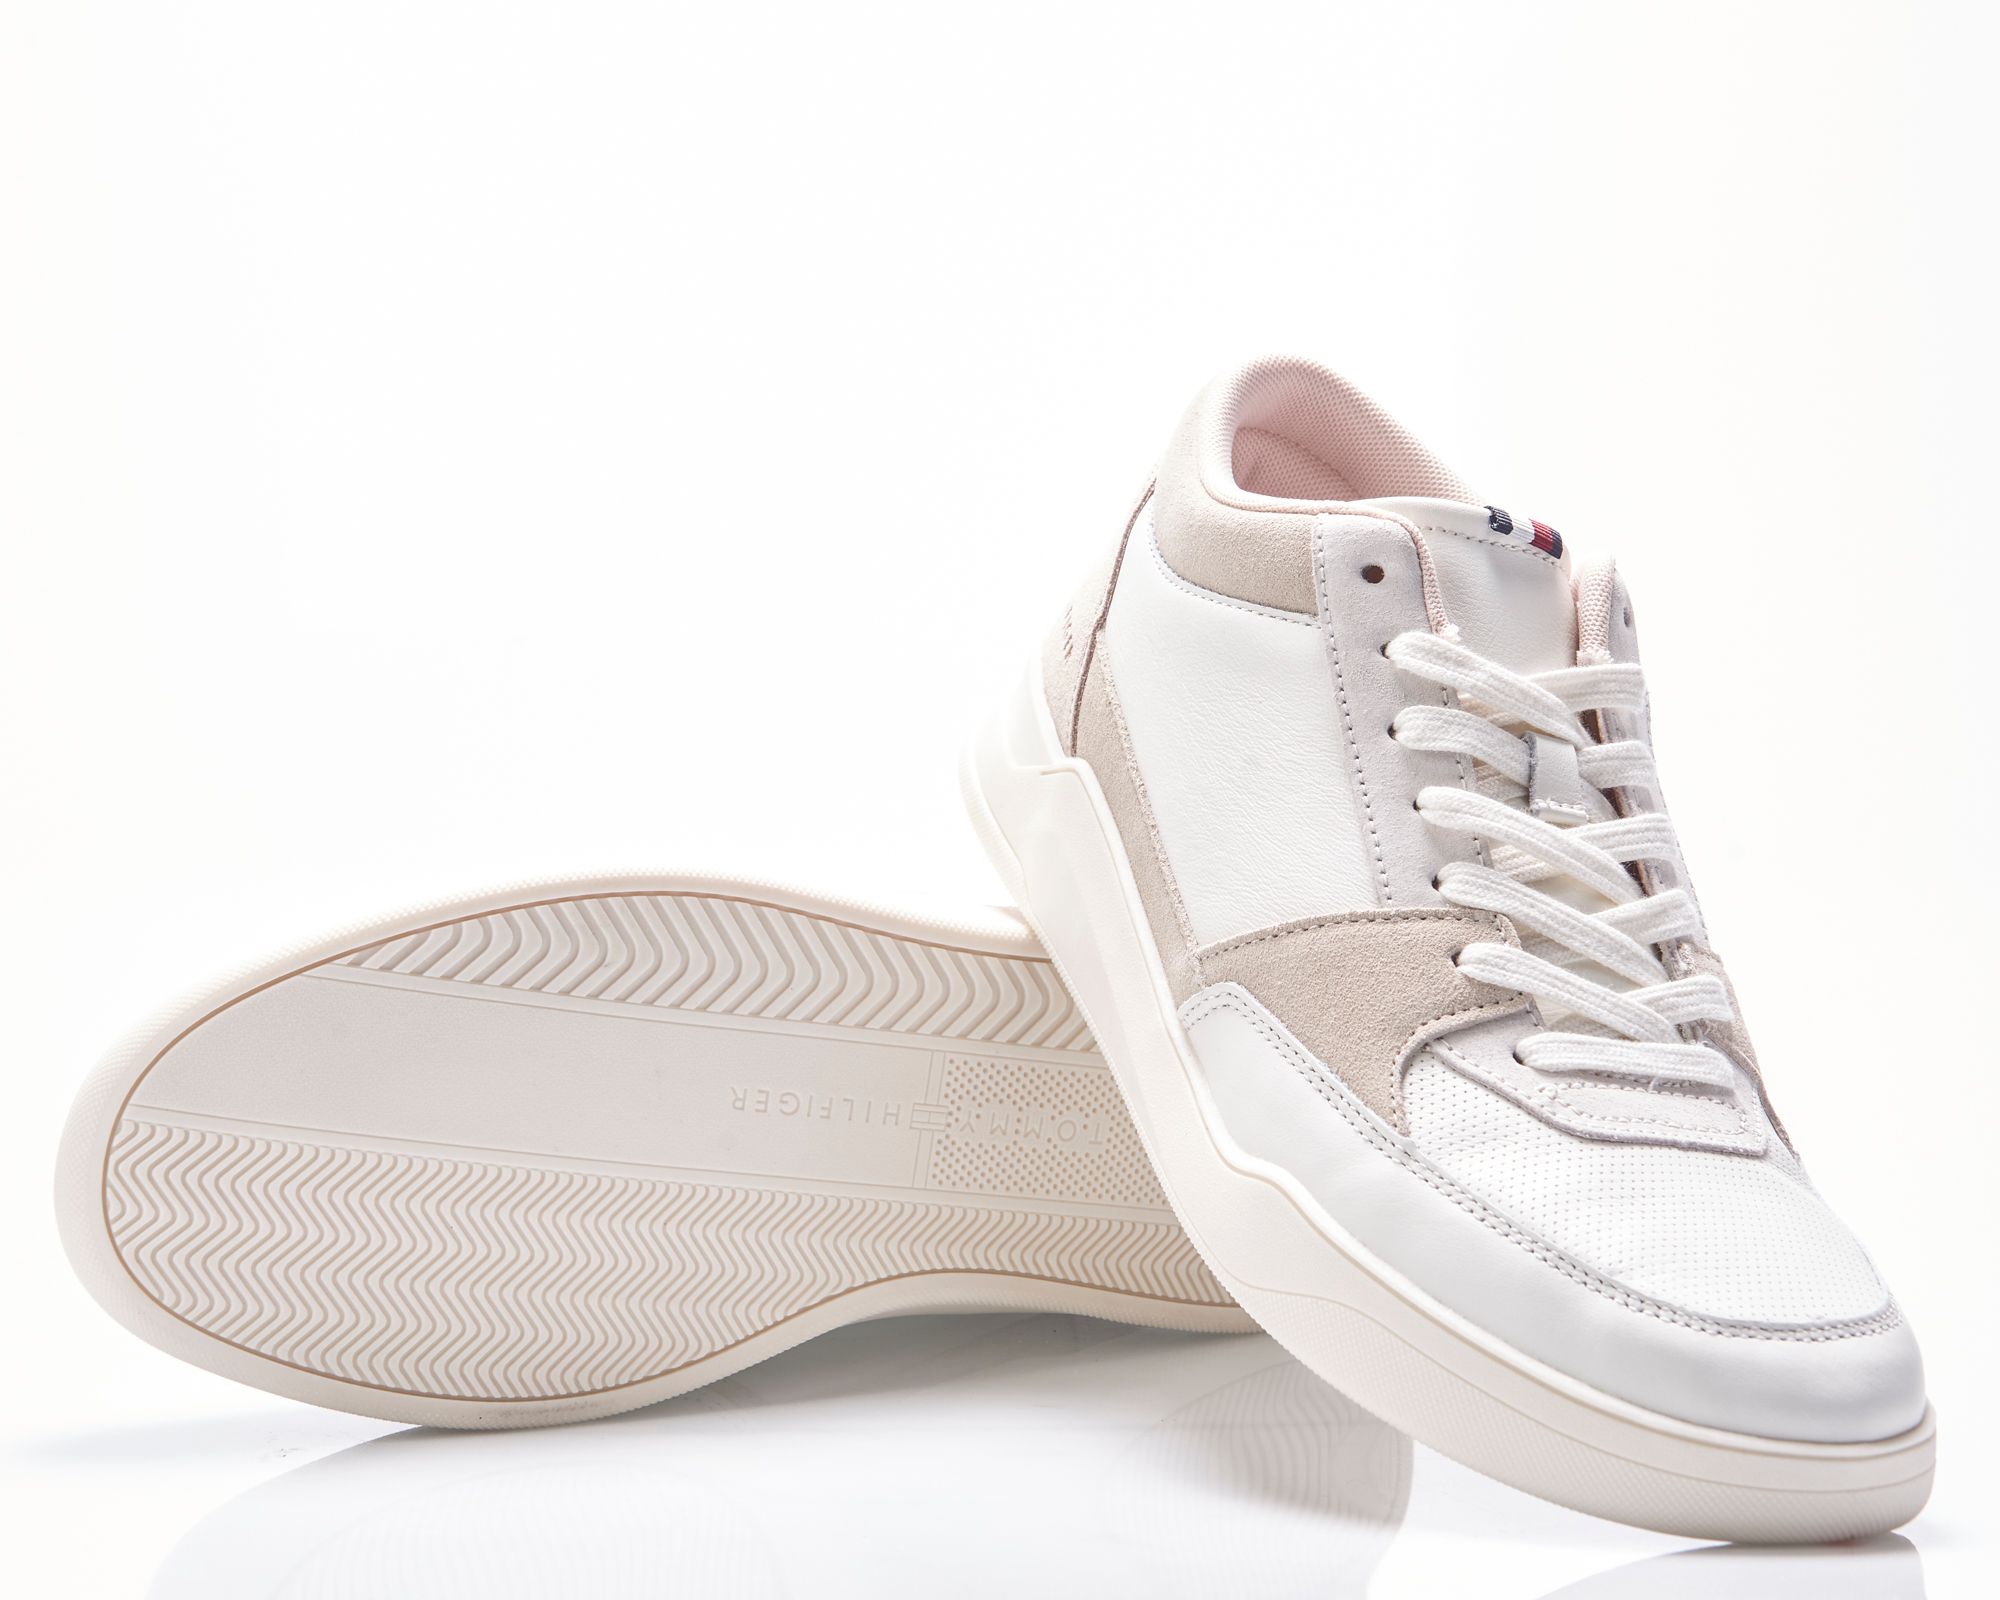 Tommy Hilfiger Menswear Casual schoenen Wit 083088-001-41